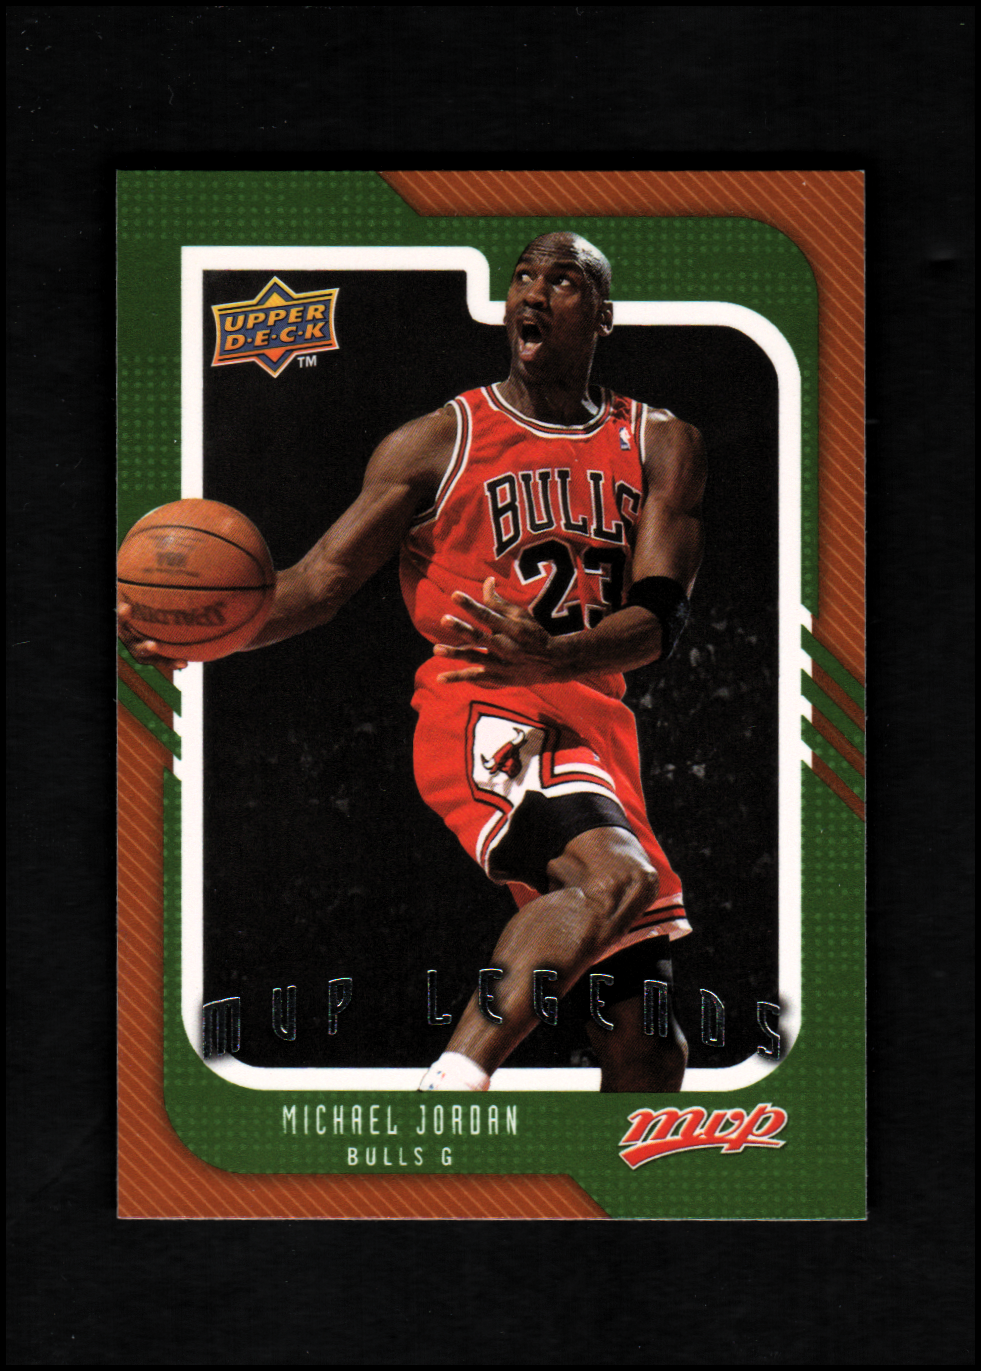 2008-09 Upper Deck MVP #245 Michael Jordan